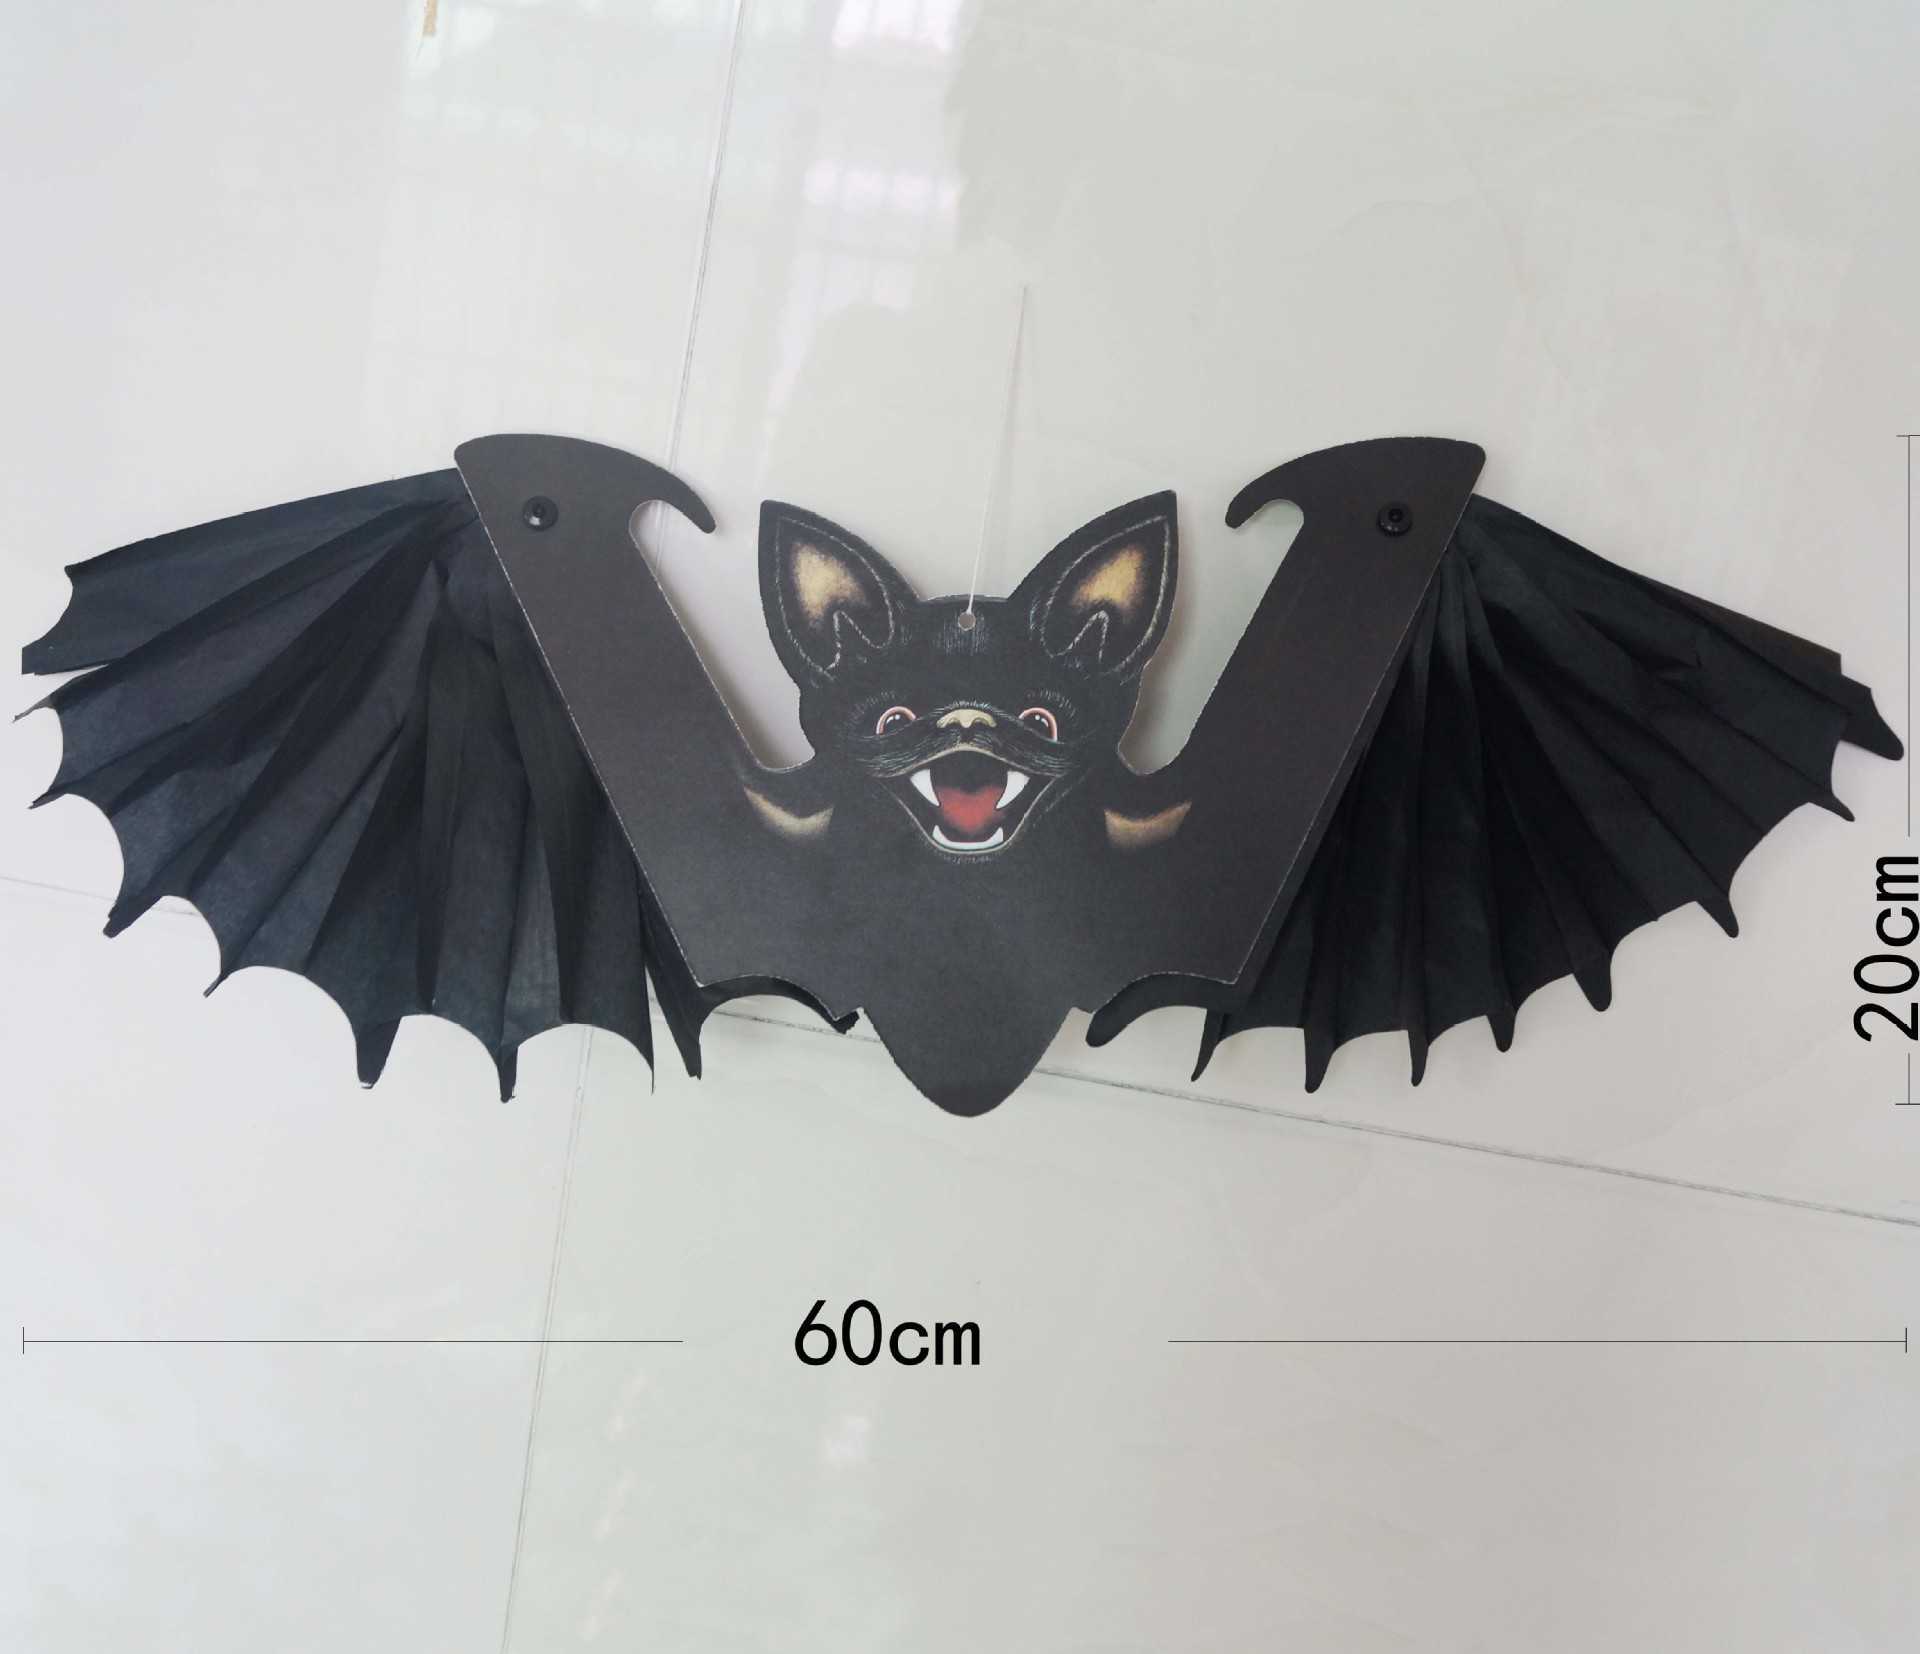 Nuovo pipistrello volante di Halloween Puntelli di ornamento da appendere la decorazione di Halloween Festival Pipistrelli dell'orrore Decorazioni la casa stregata interni ed esterni